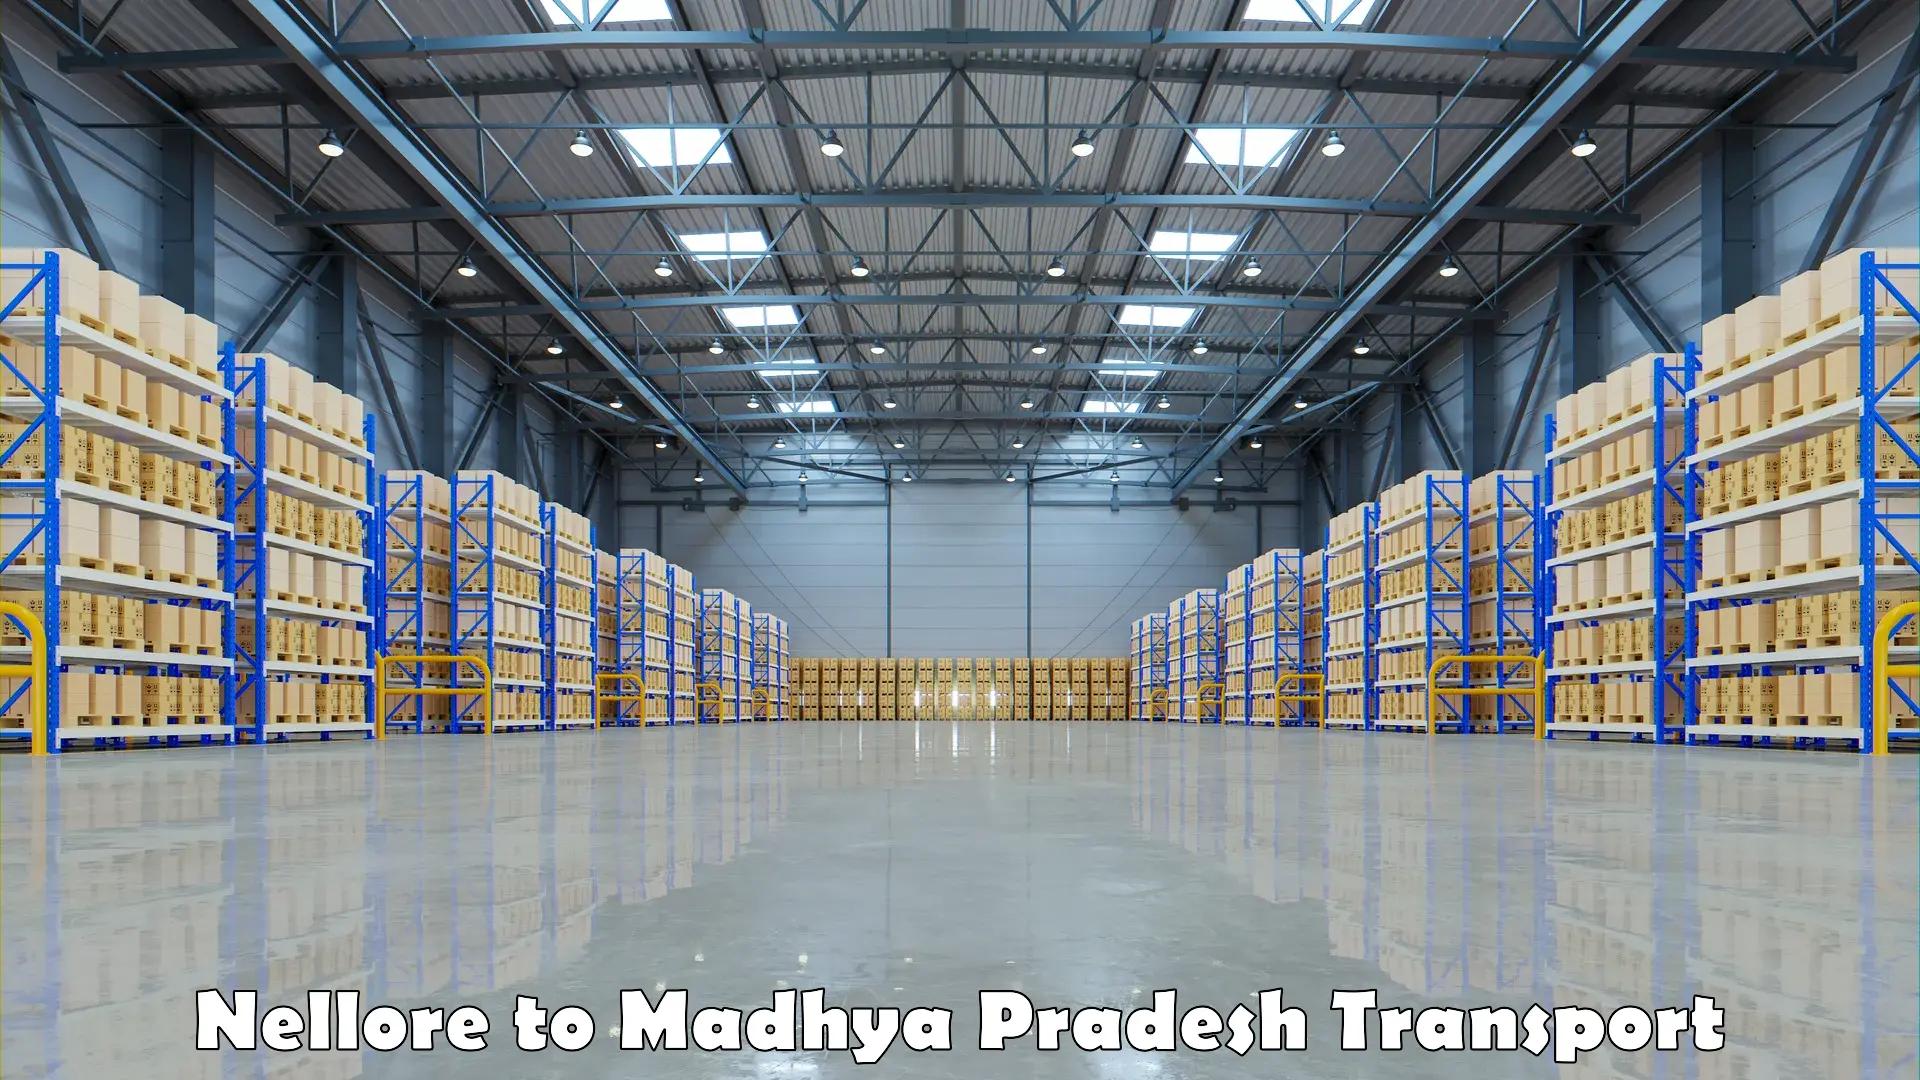 Delivery service Nellore to Madhya Pradesh